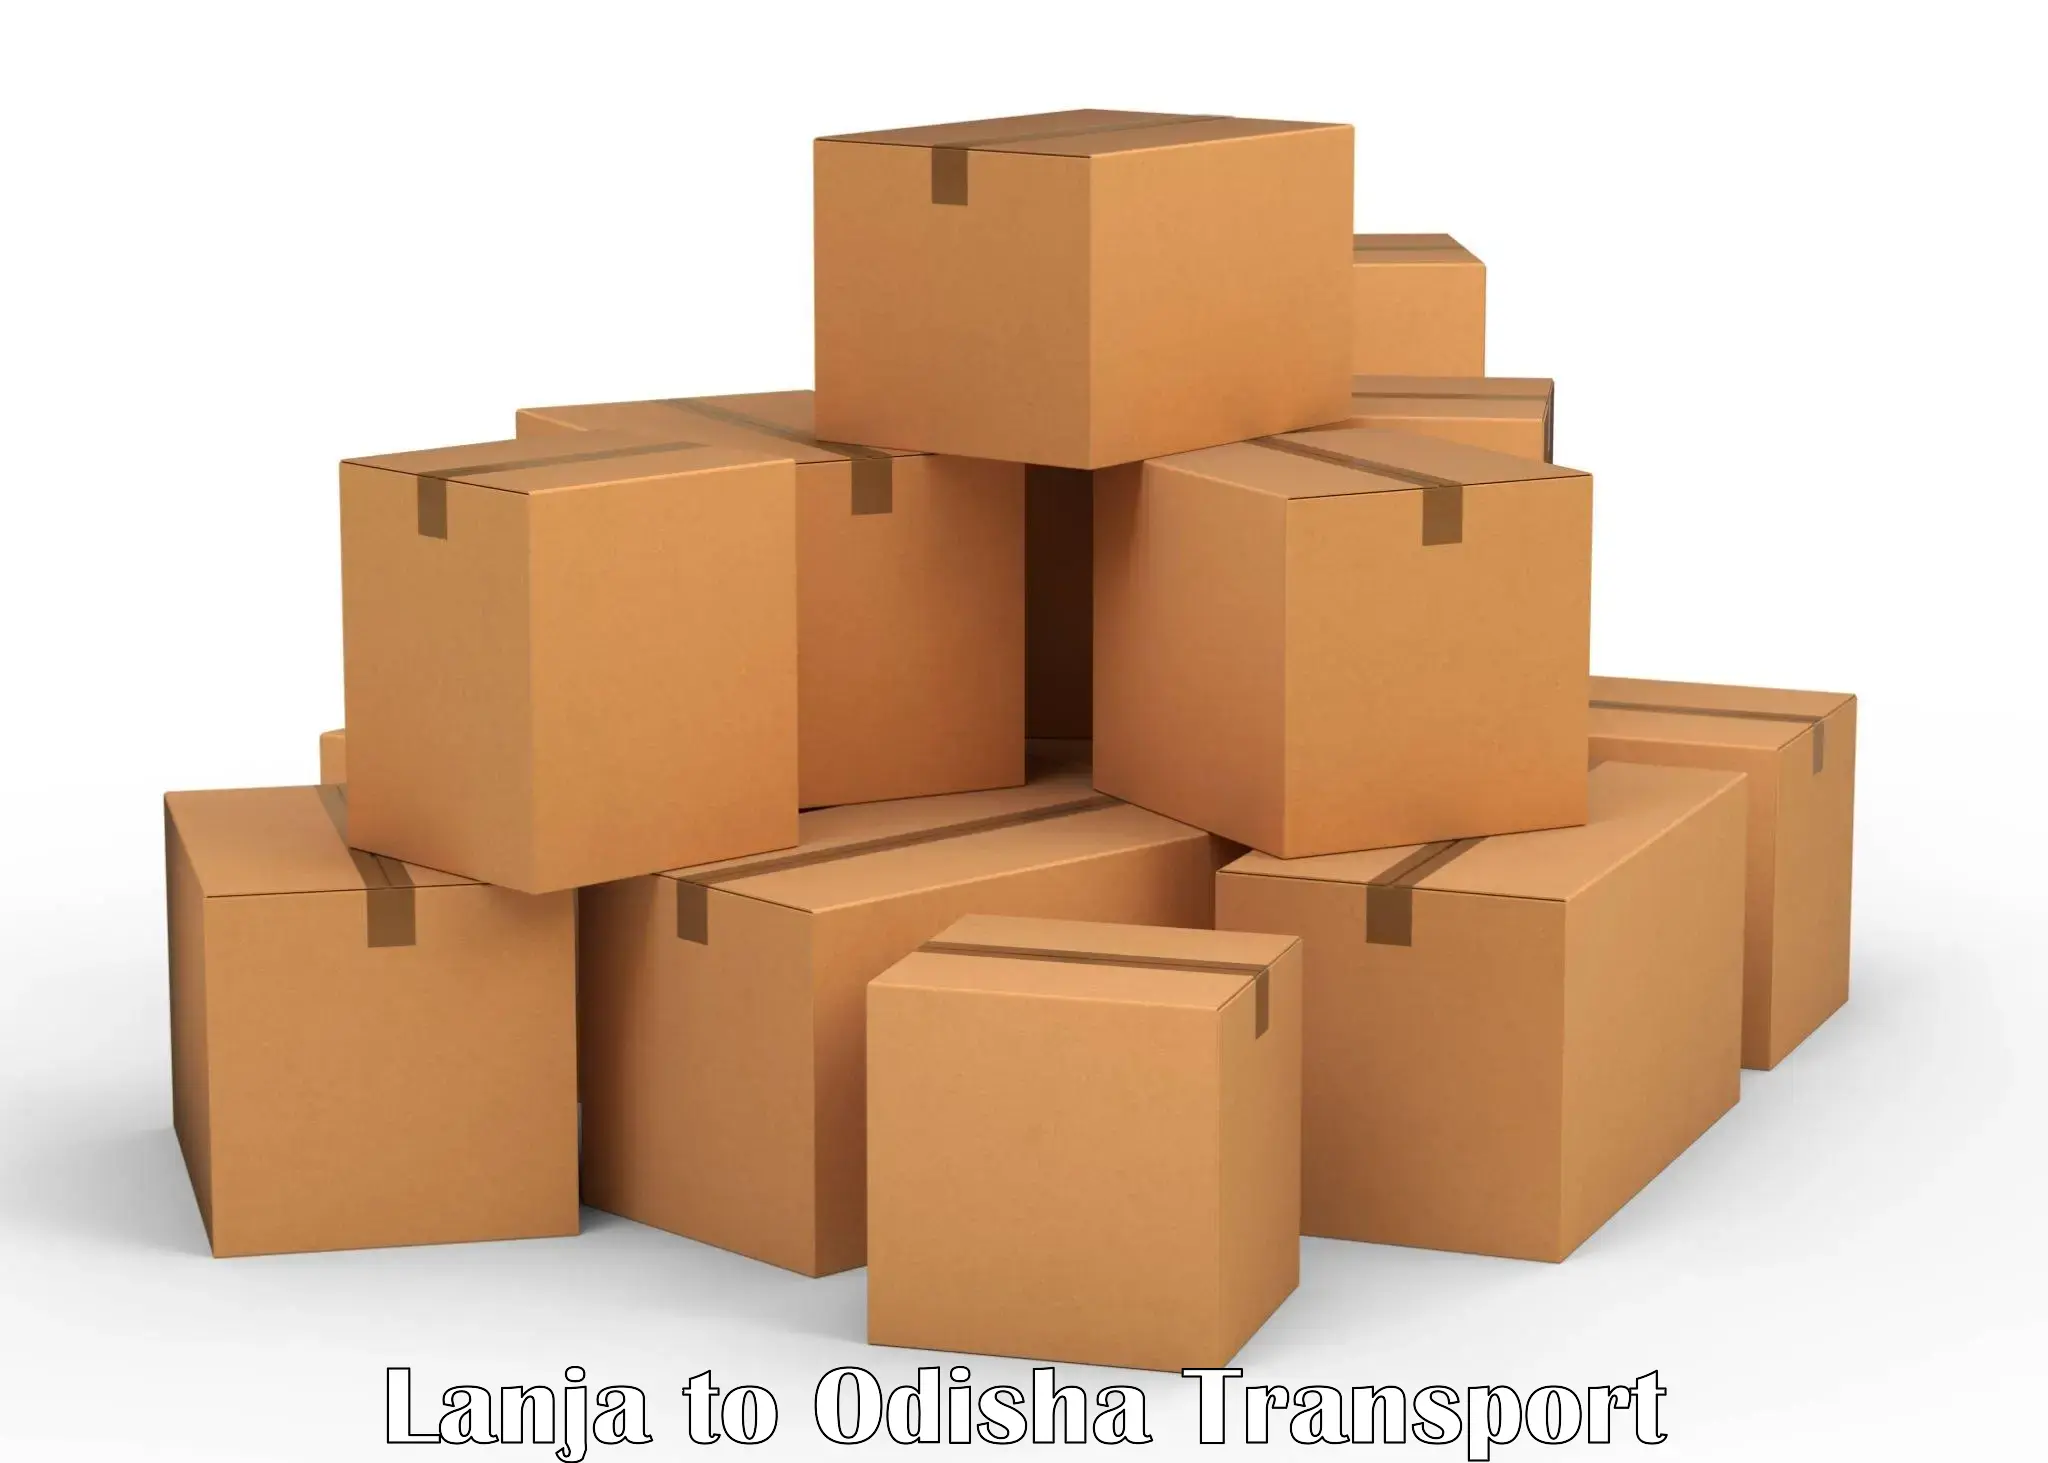 Goods transport services Lanja to Bhubaneswar